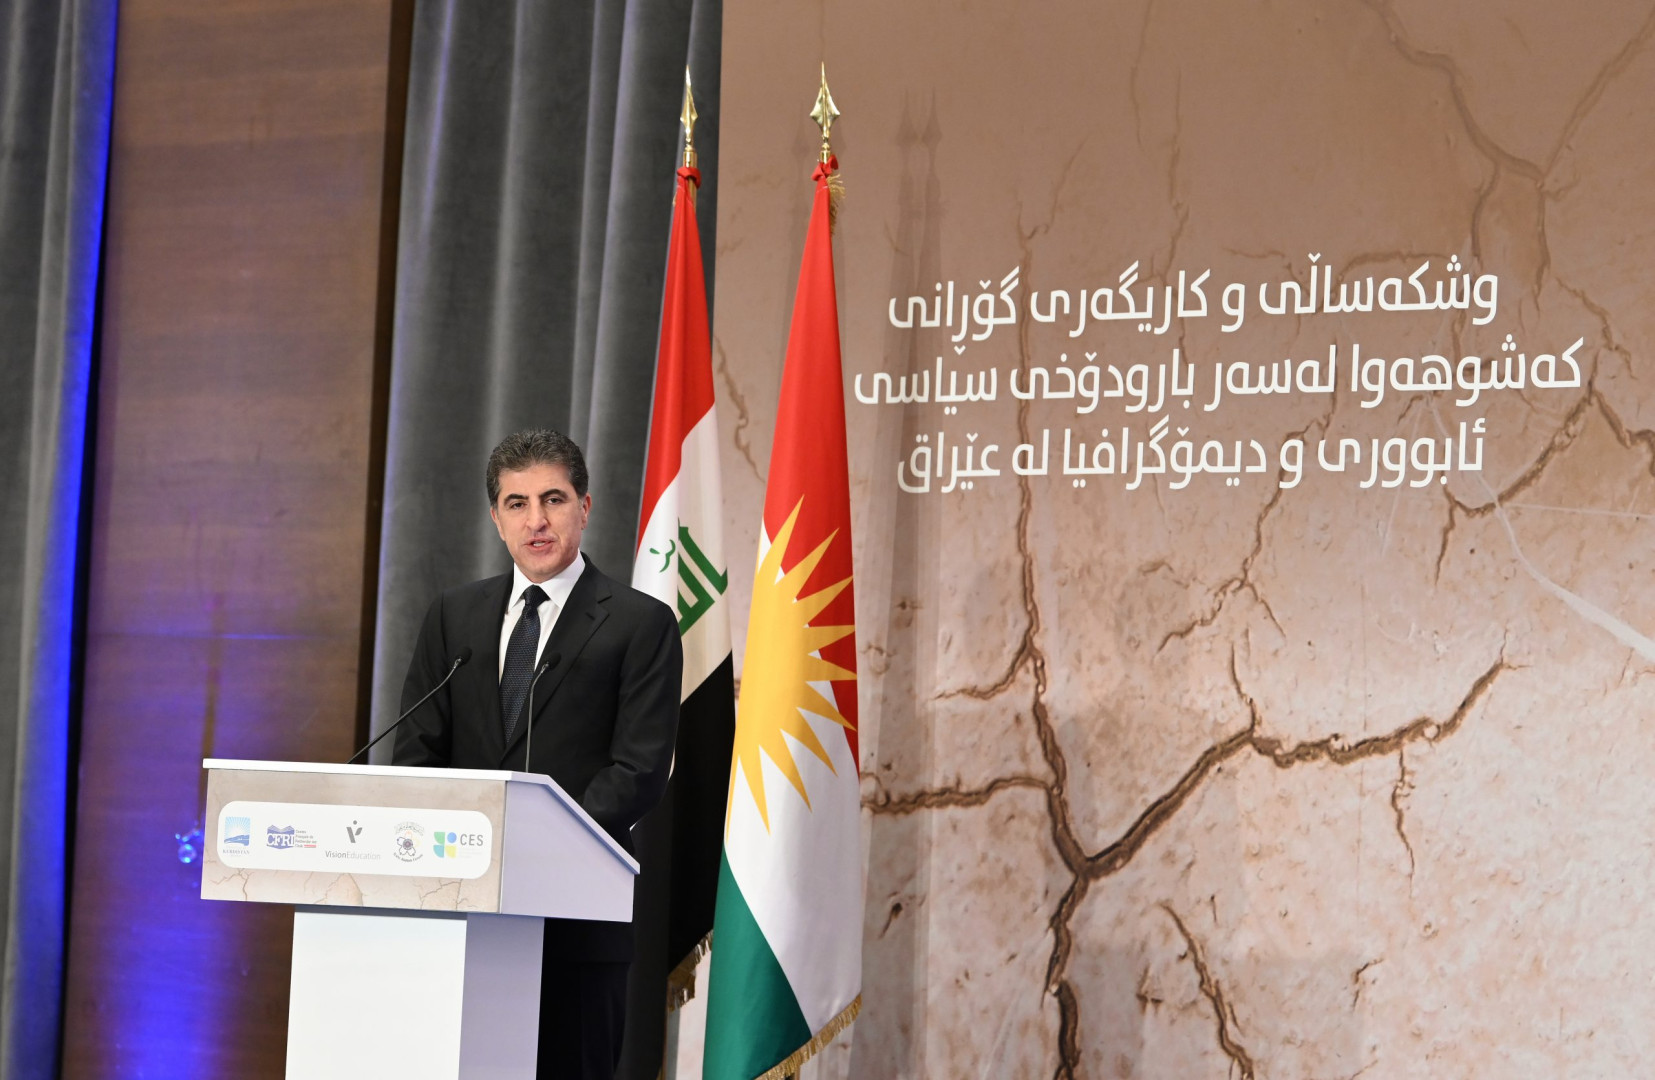 Kurdistan Region willing to develop ties with Azerbaijan PM Barzani writes to President Aliyev